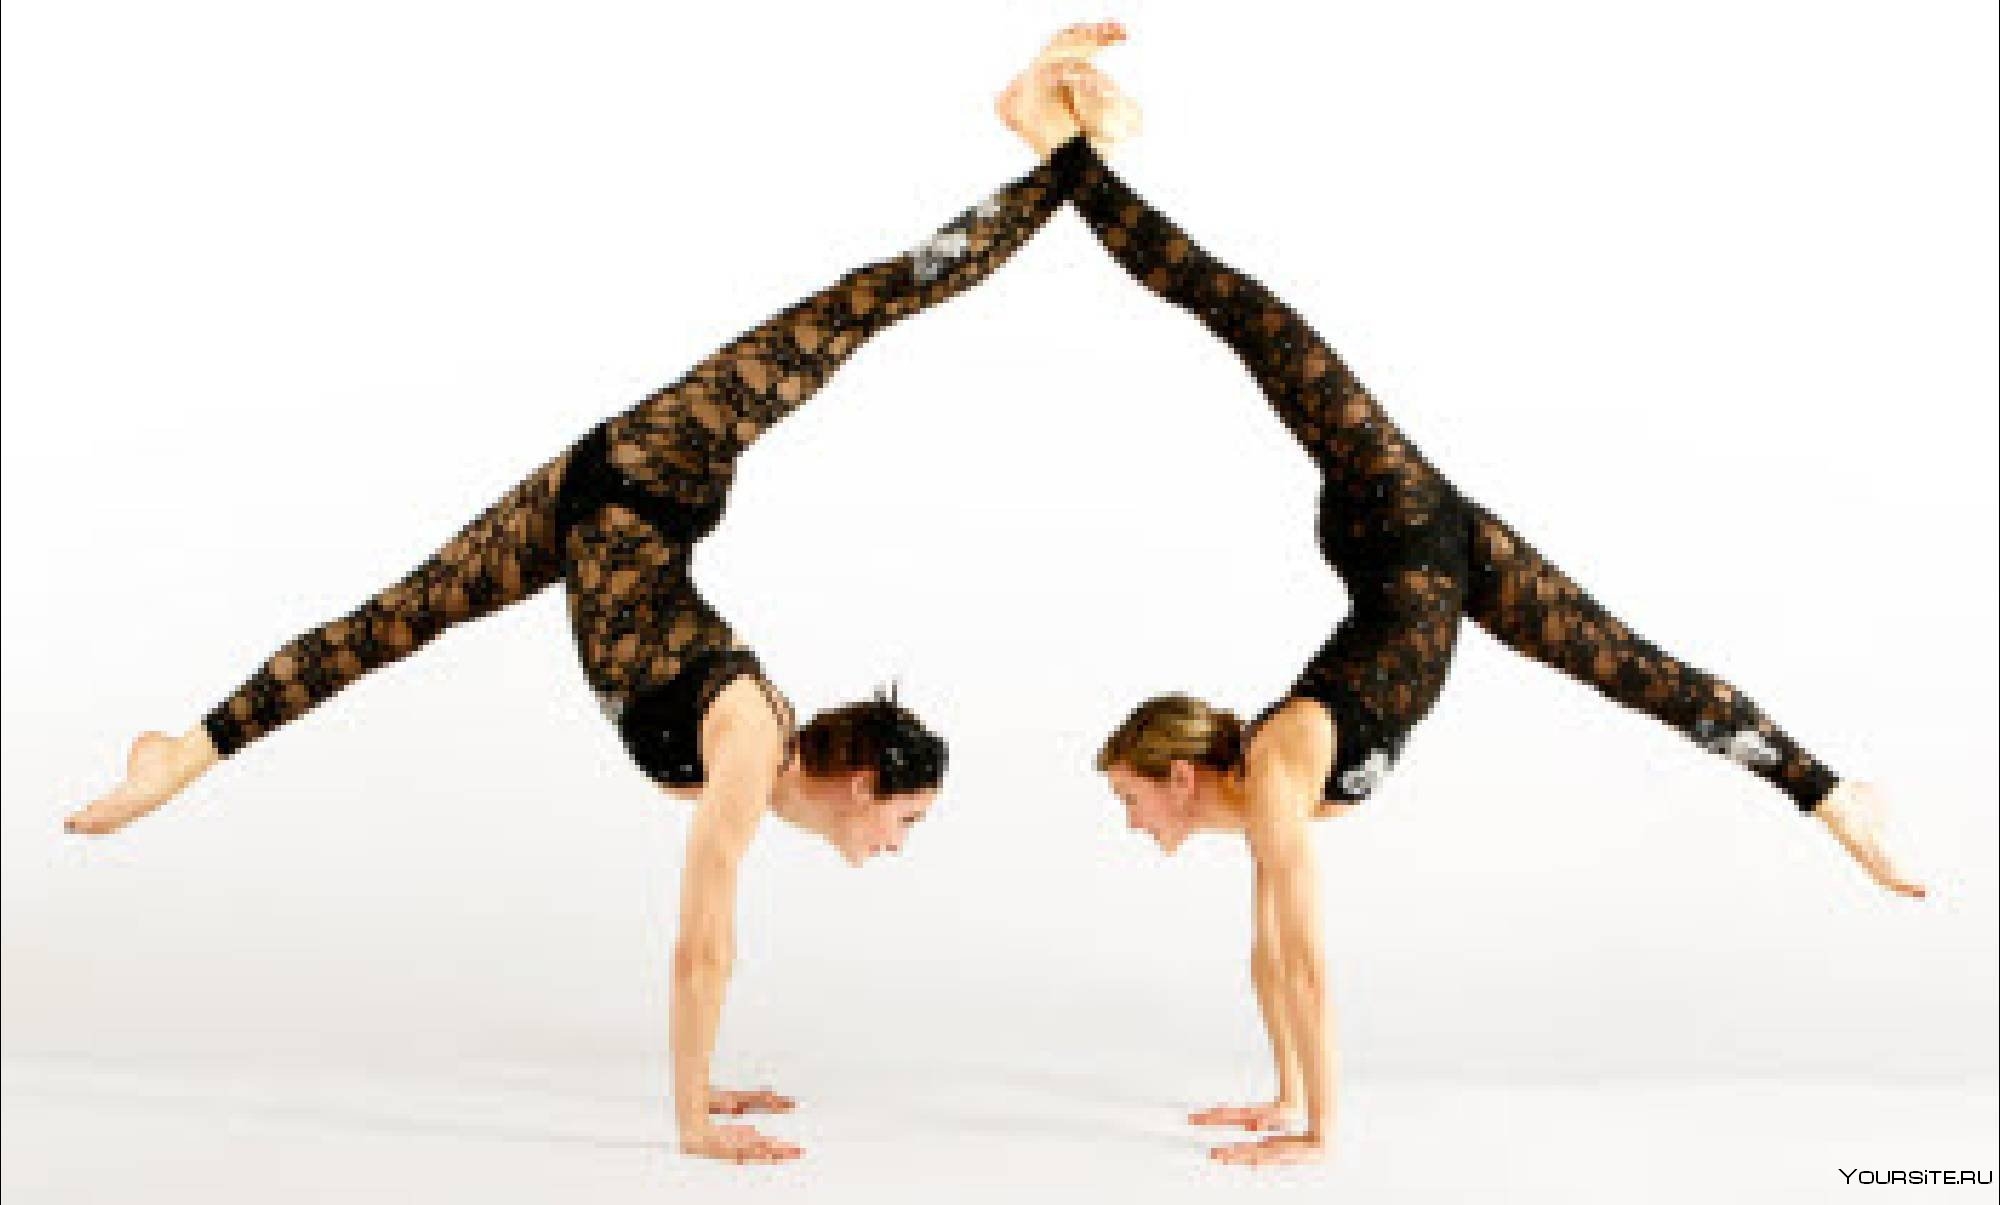 Сделать из 2 человек 1. Акробатические элементы. Акробатические упражнения в паре. Гимнастические элементы легкие. Легкие элементы акробатики.